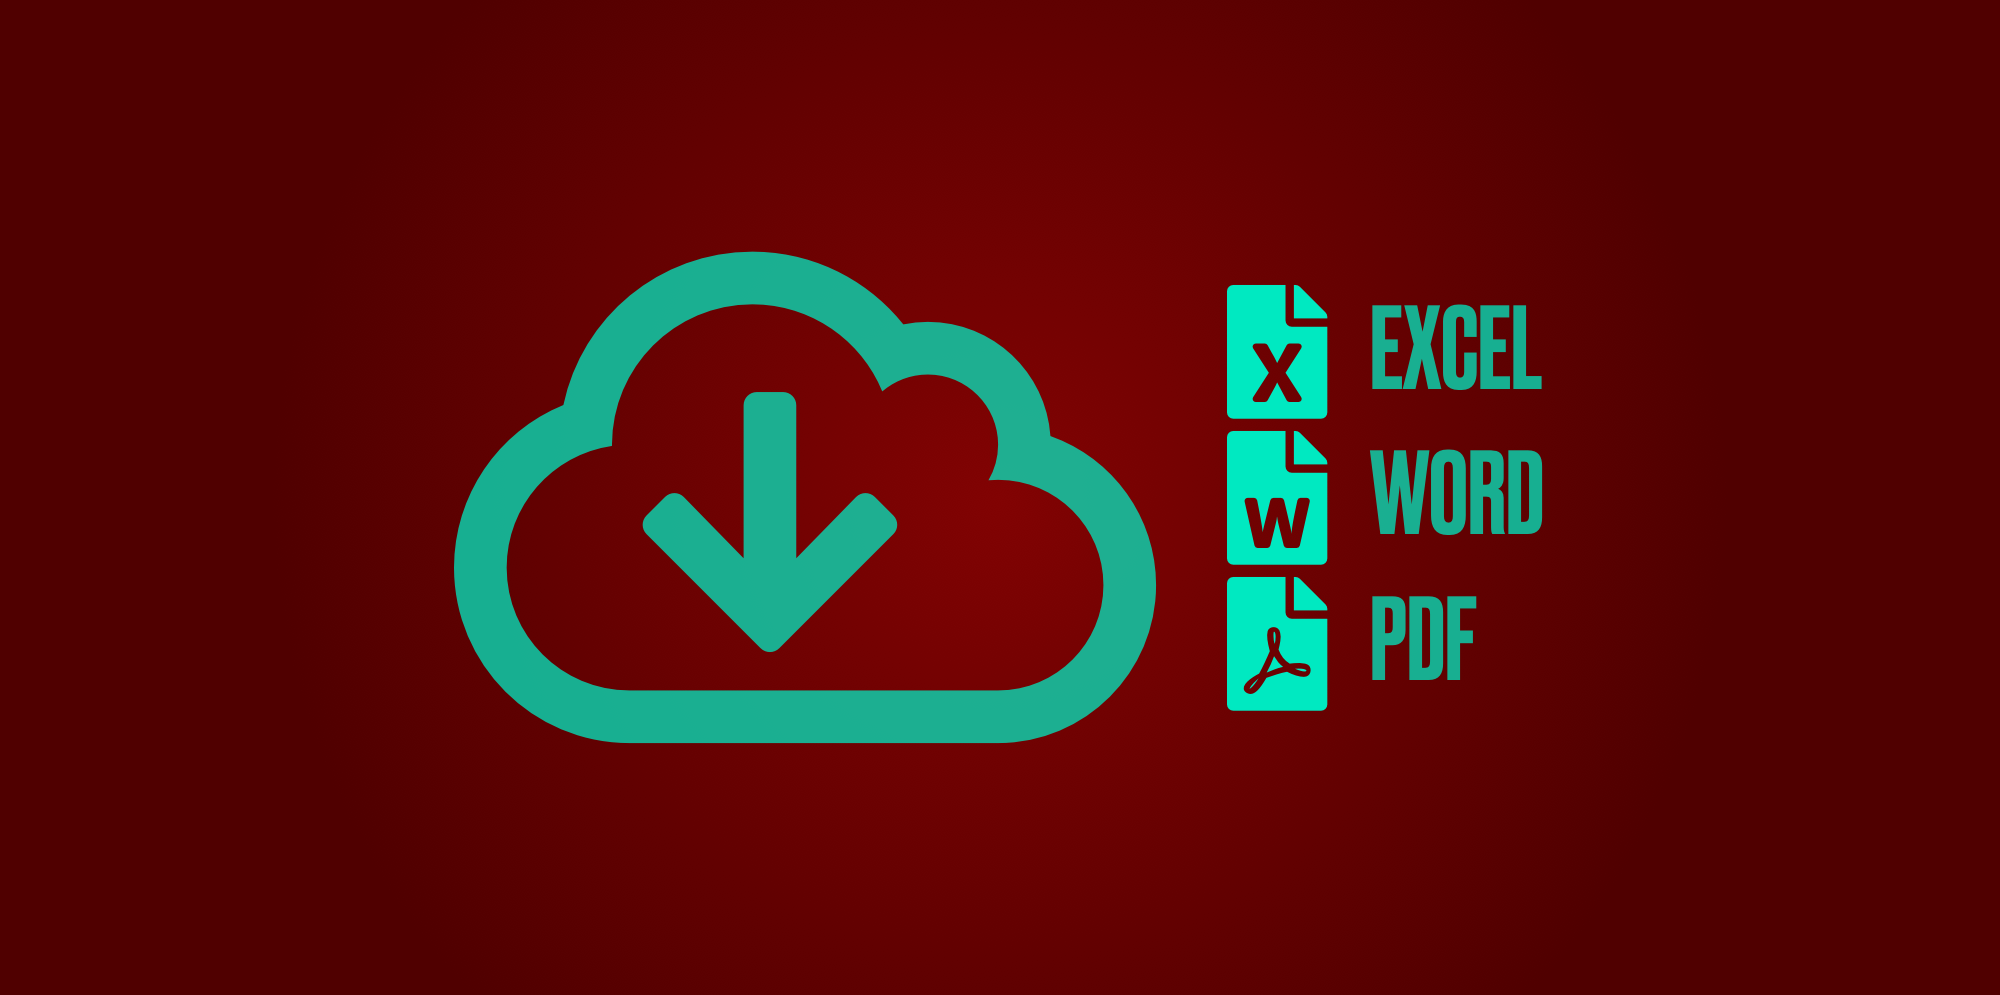 Icono Exportación de contenidos en formato Excel, Word y PDF